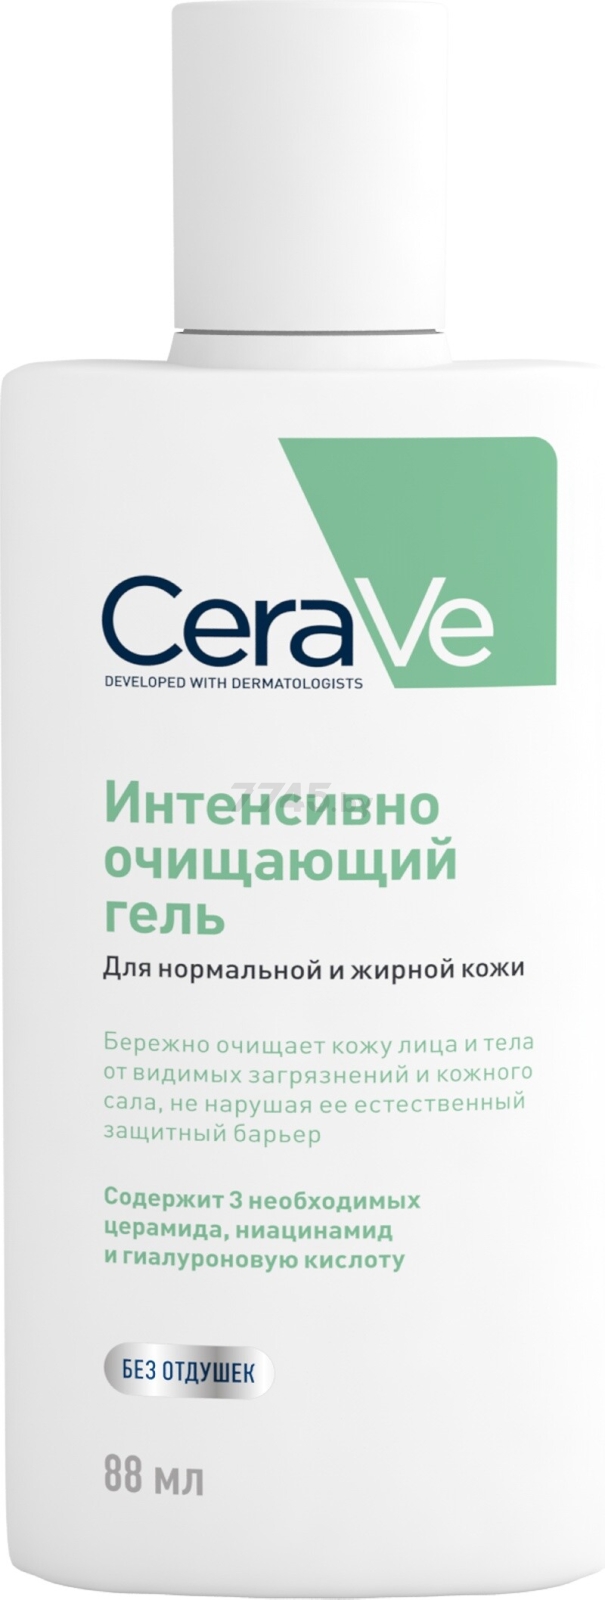 Гель для умывания CERAVE Очищающий для нормальной и жирной кожи 88 мл (0431040026) - Фото 2